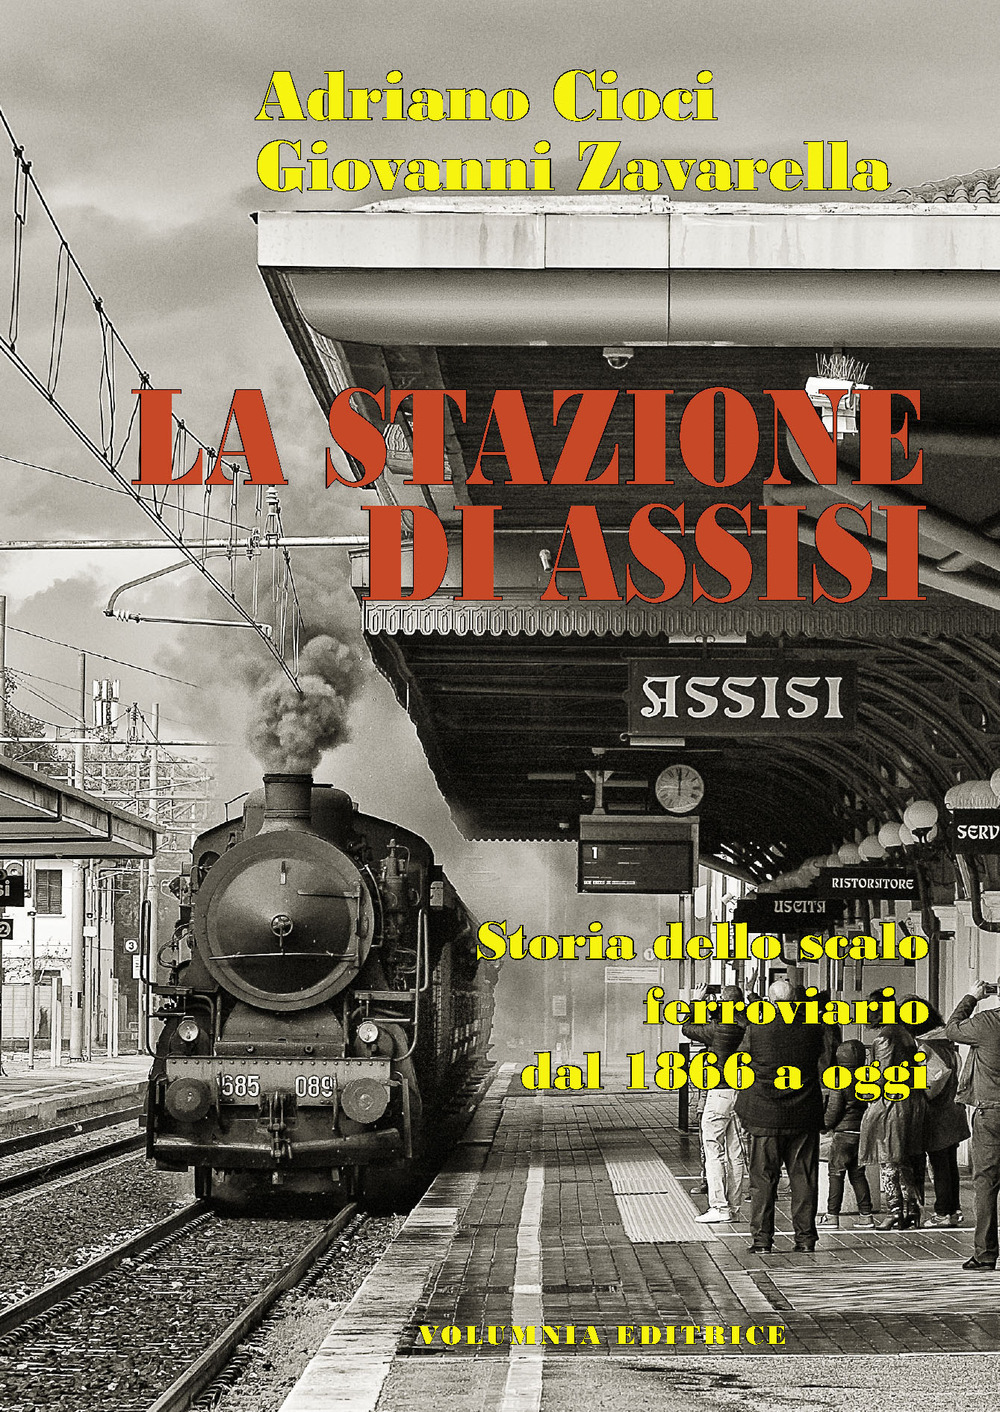 La stazione di Assisi. Storia dello scalo ferroviario dal 1866 a oggi